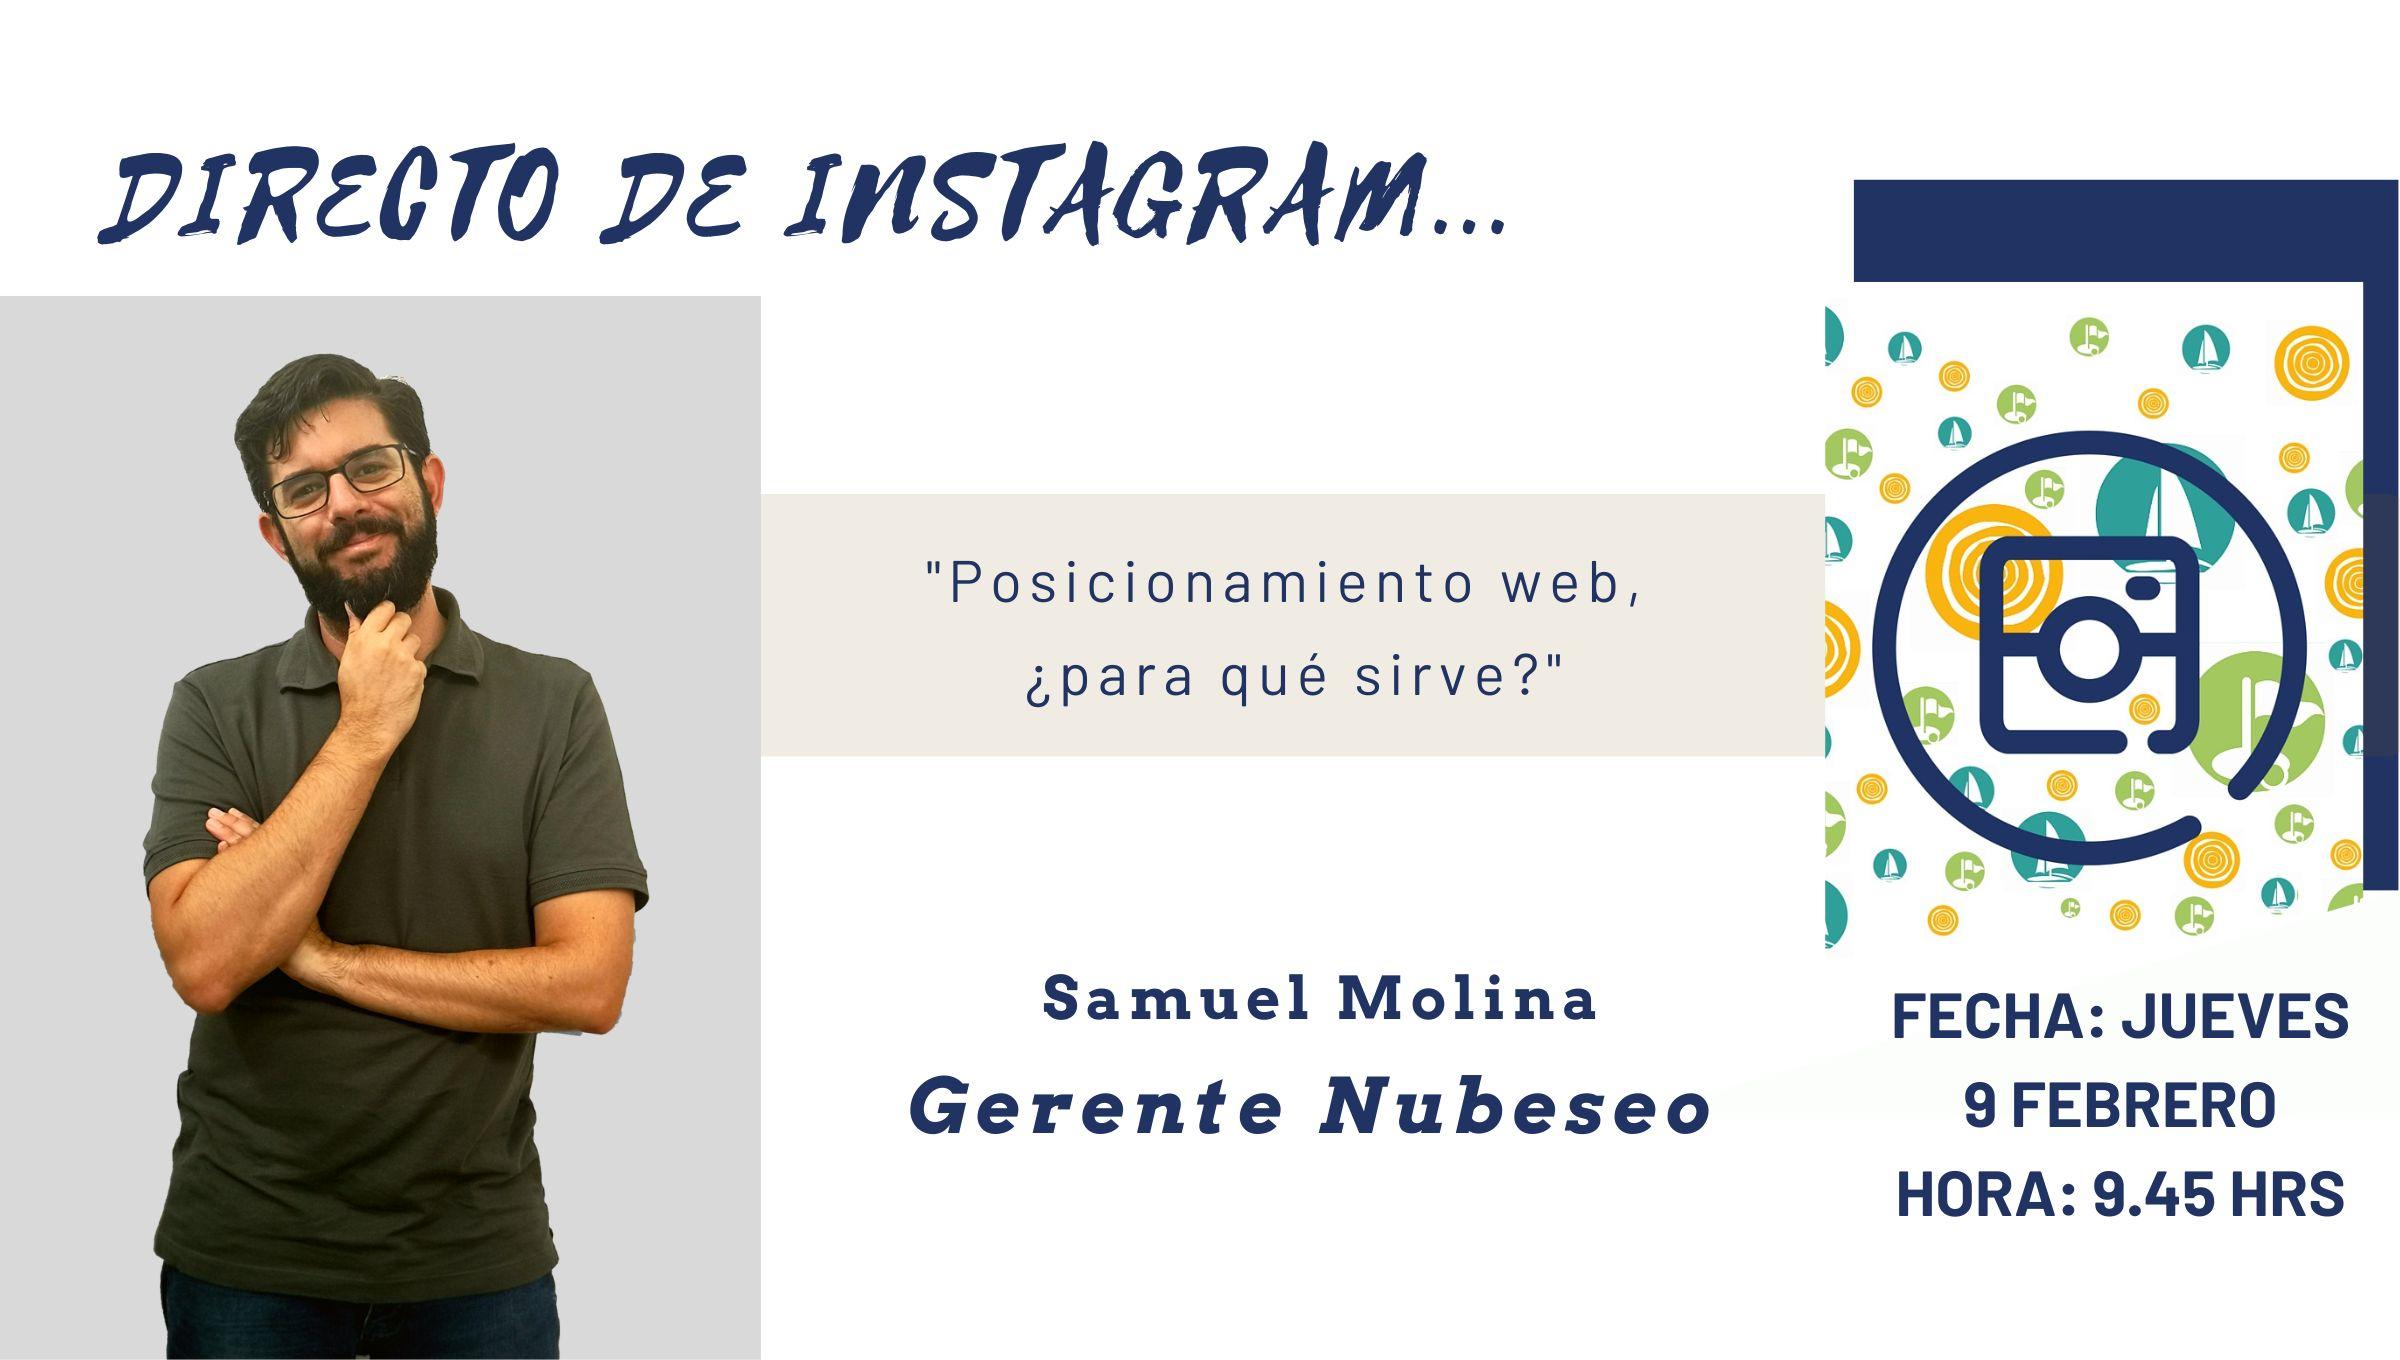 Directo de Instagram con Samuel Molina de NubeSeo para hablar sobre «Posicionamiento web, ¿para qué sirve?»